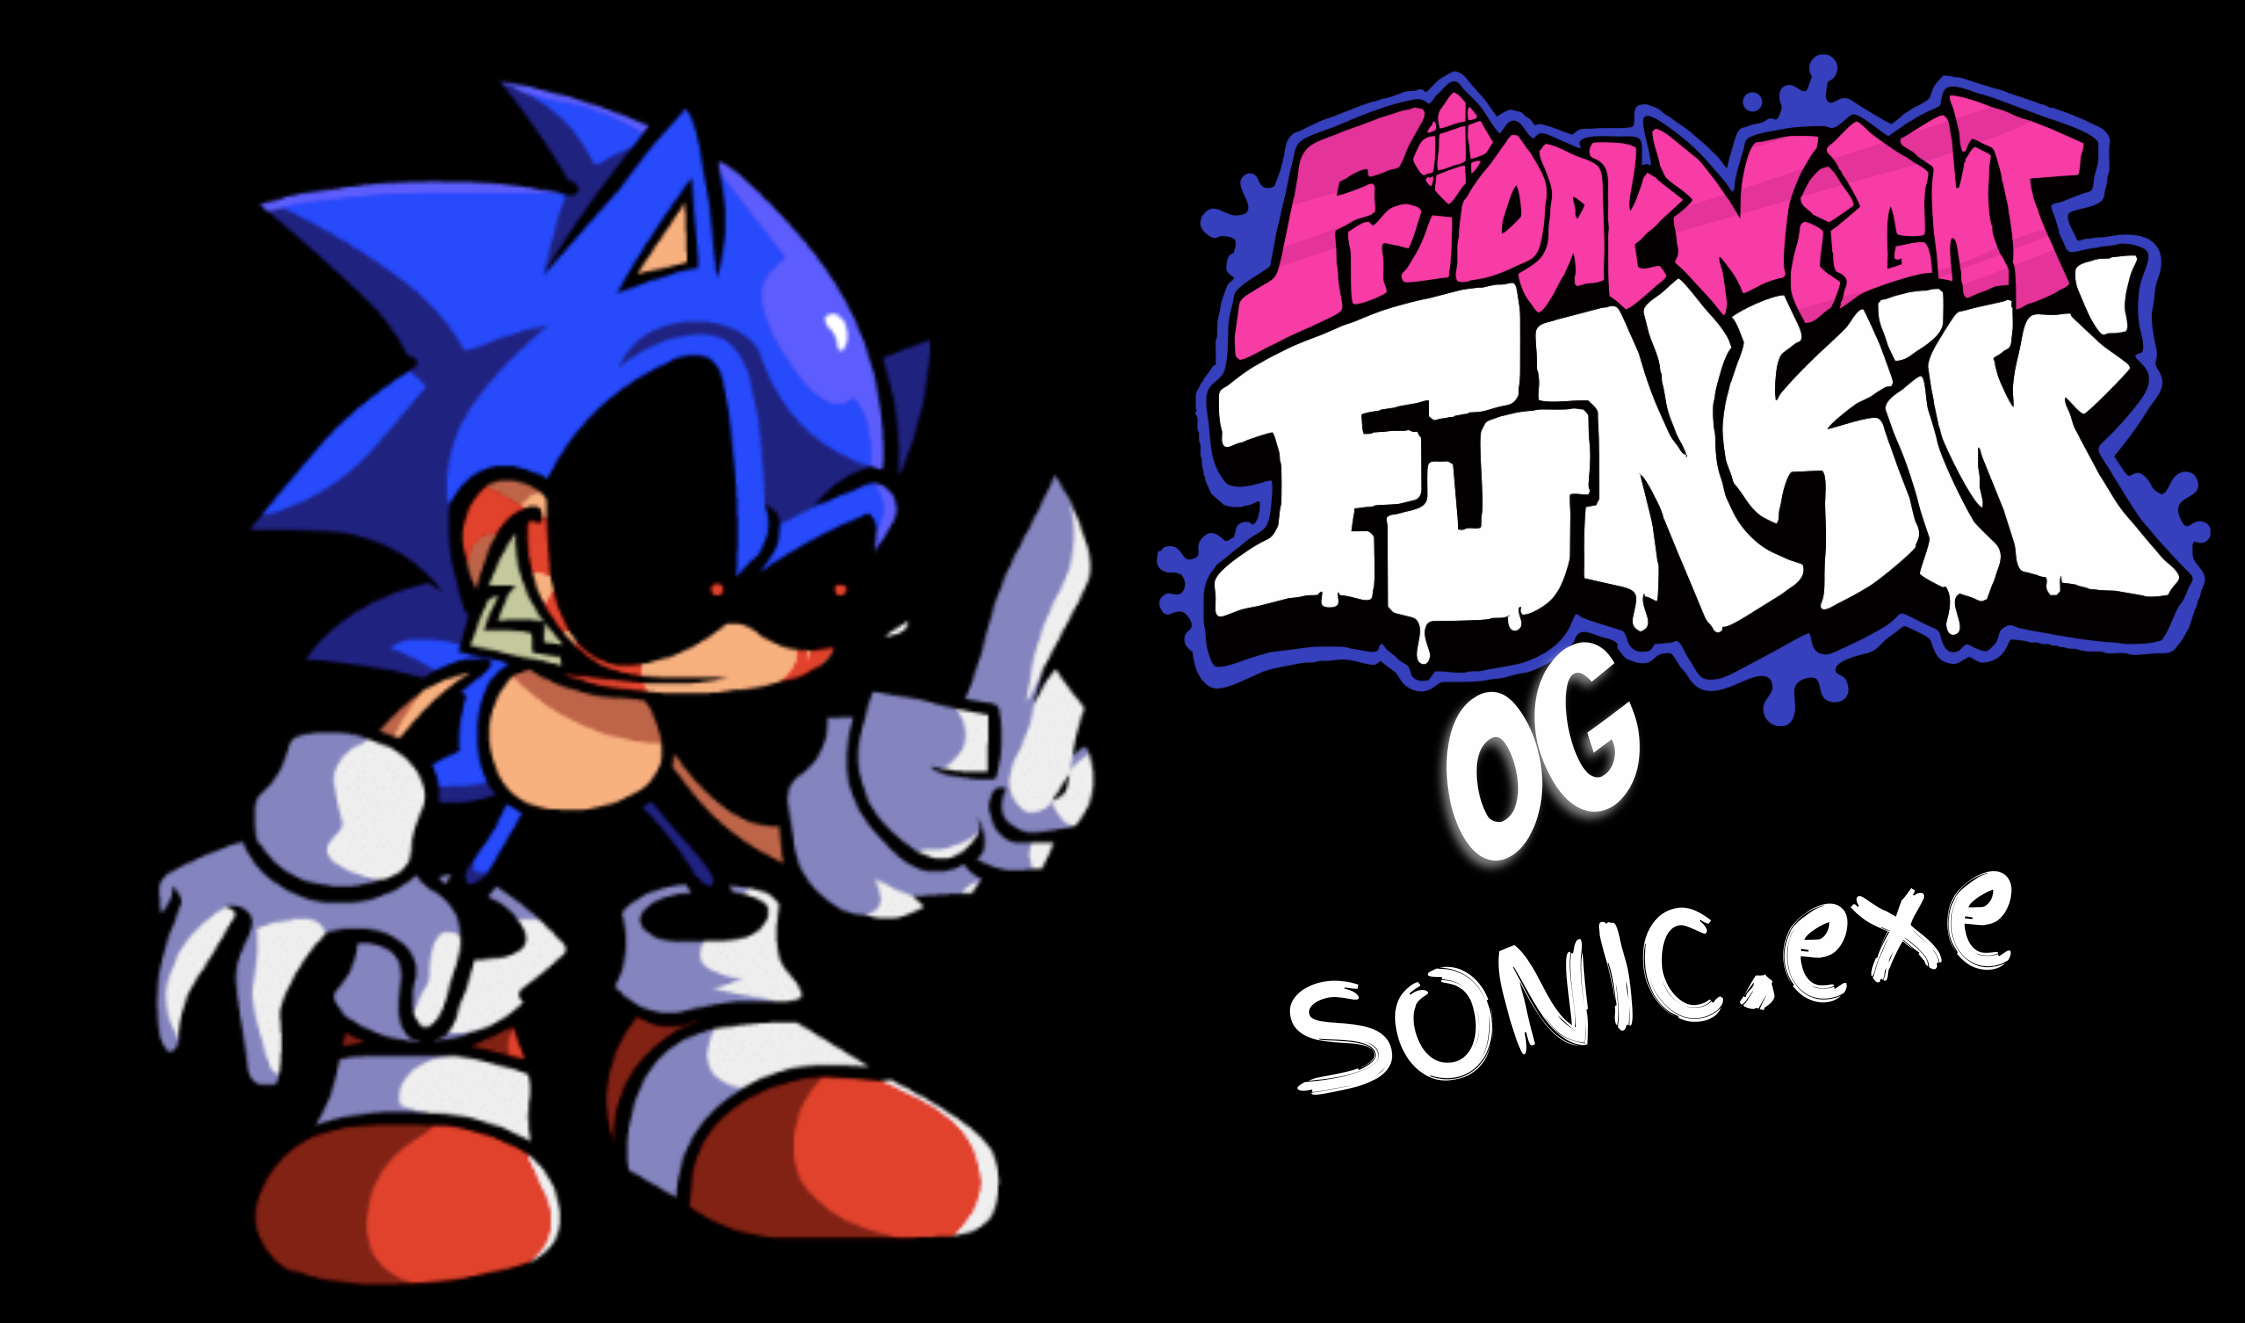 FNF vs Sonic.exe 2 Minus Hottler Mod - Play Online Free - FNF GO